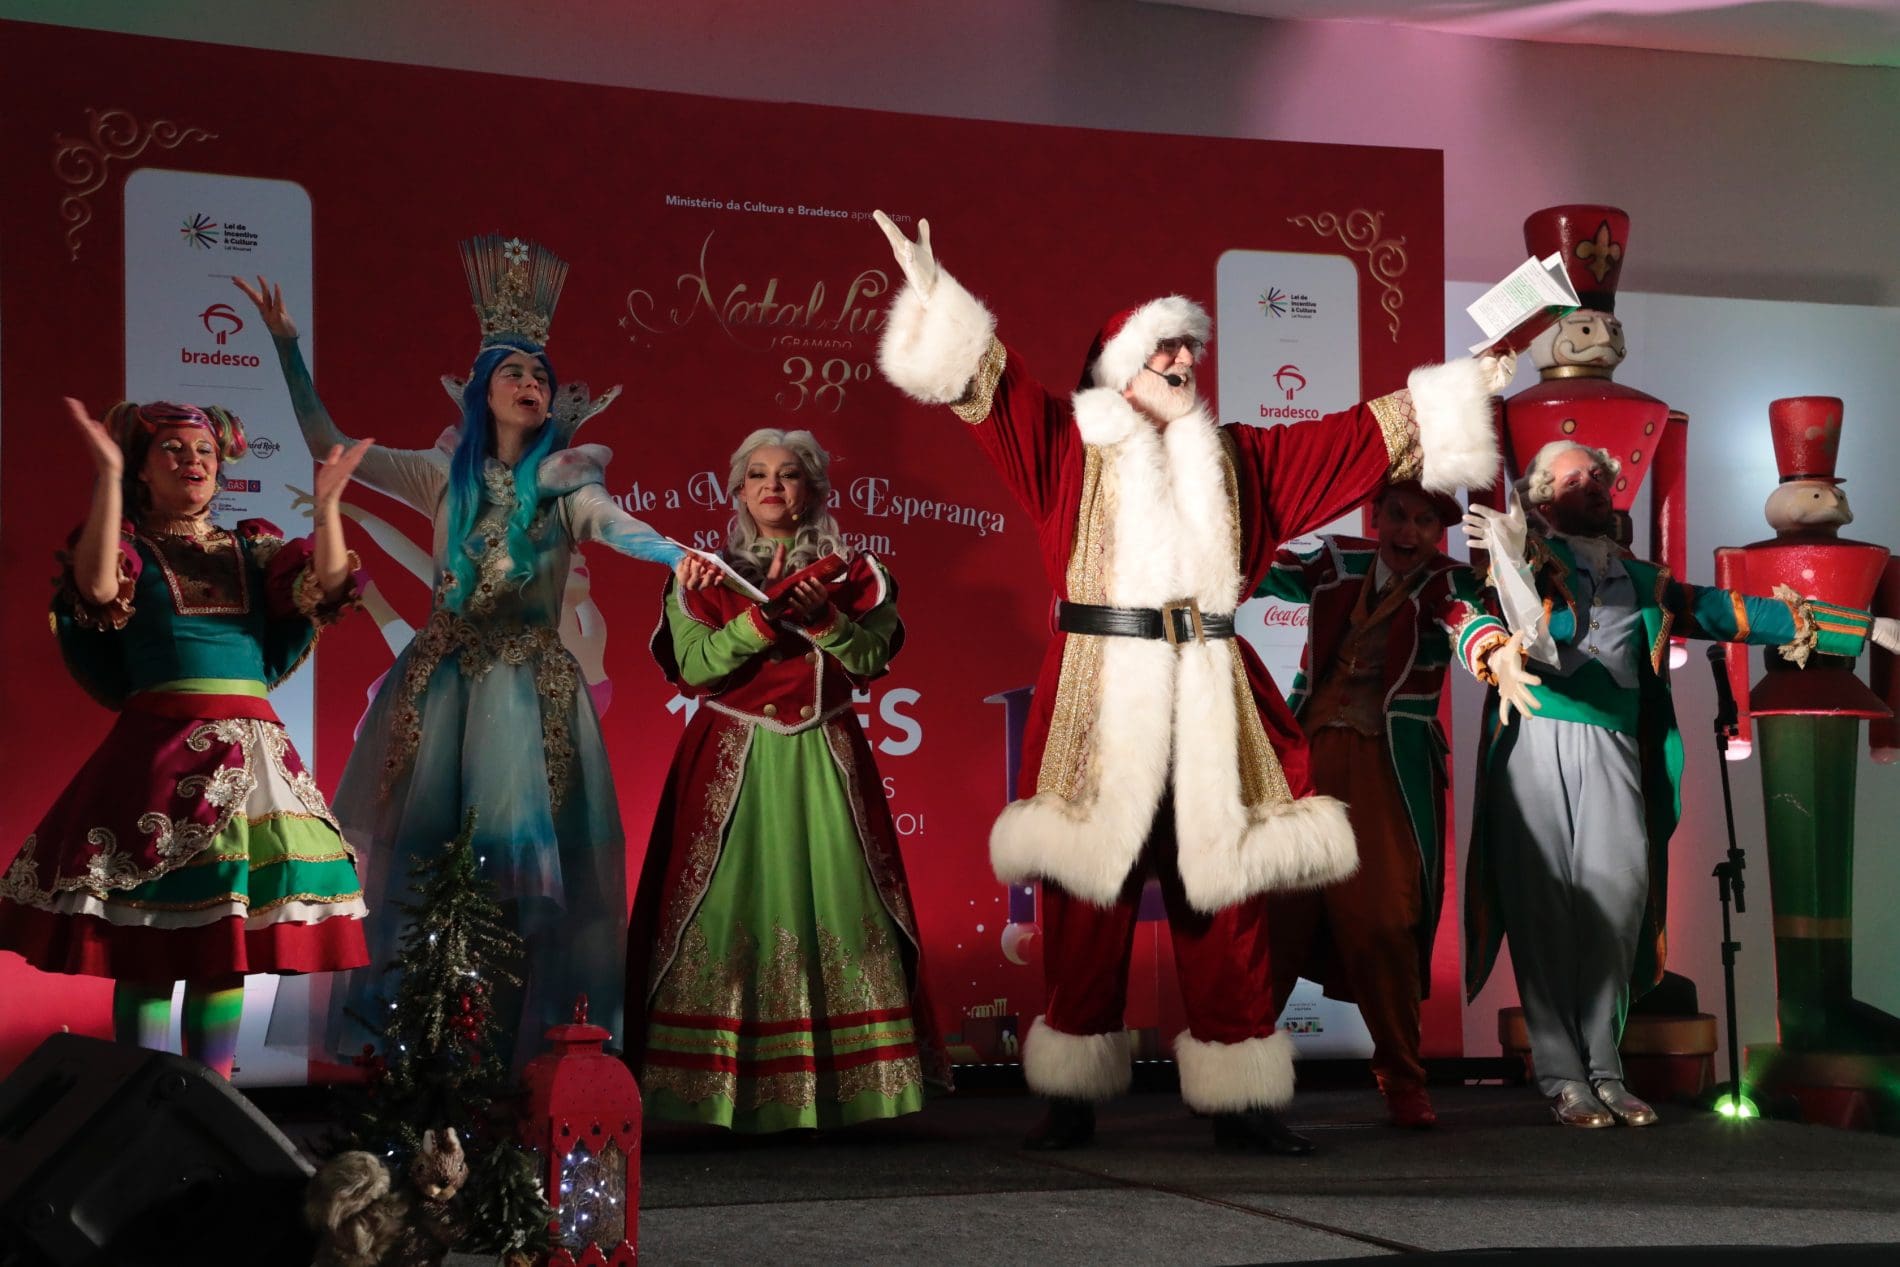 Natal Luz de Gramado anuncia espetáculos e atrações